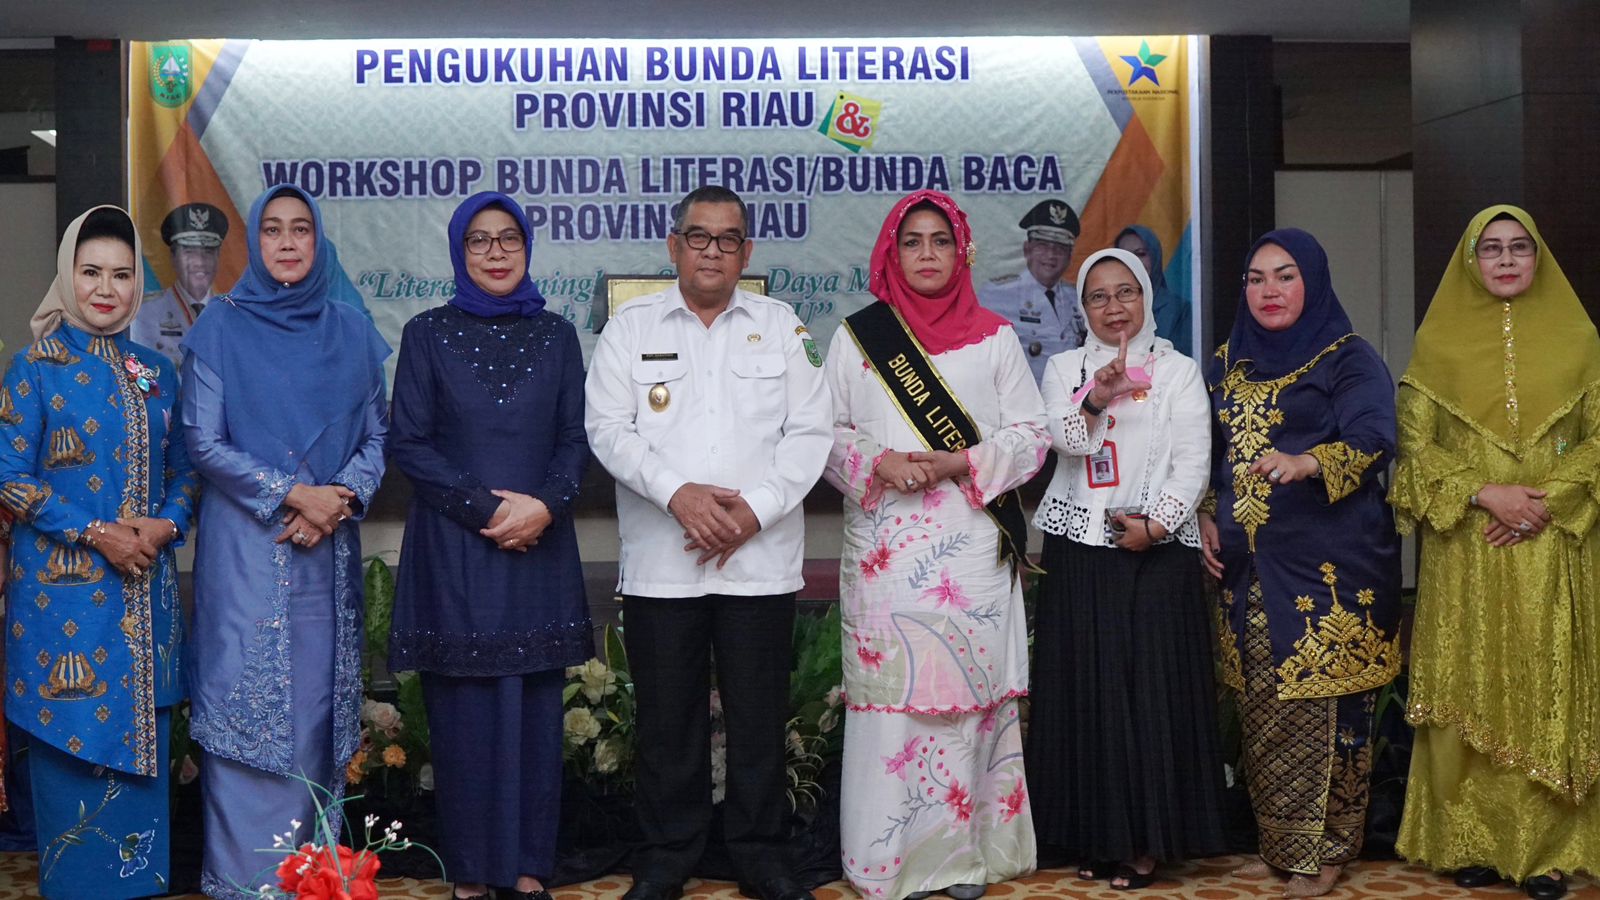 Bunda Ika Menyambut Baik  Pengukuhan Bunda Literasi Provinsi Riau